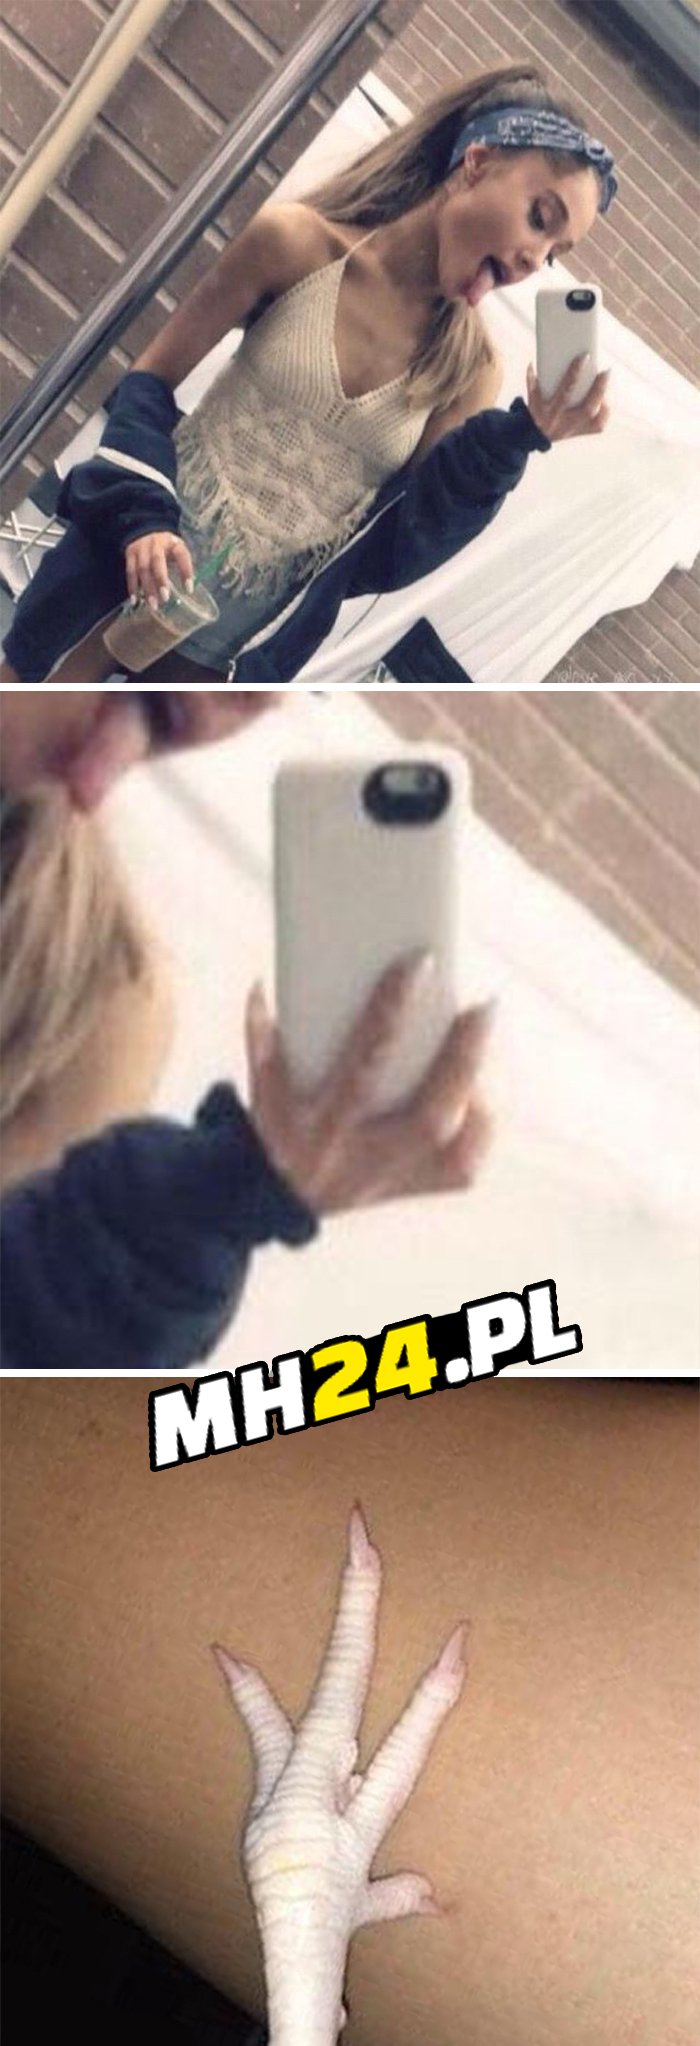 Jej selfie i co ja widzę Obrazki   